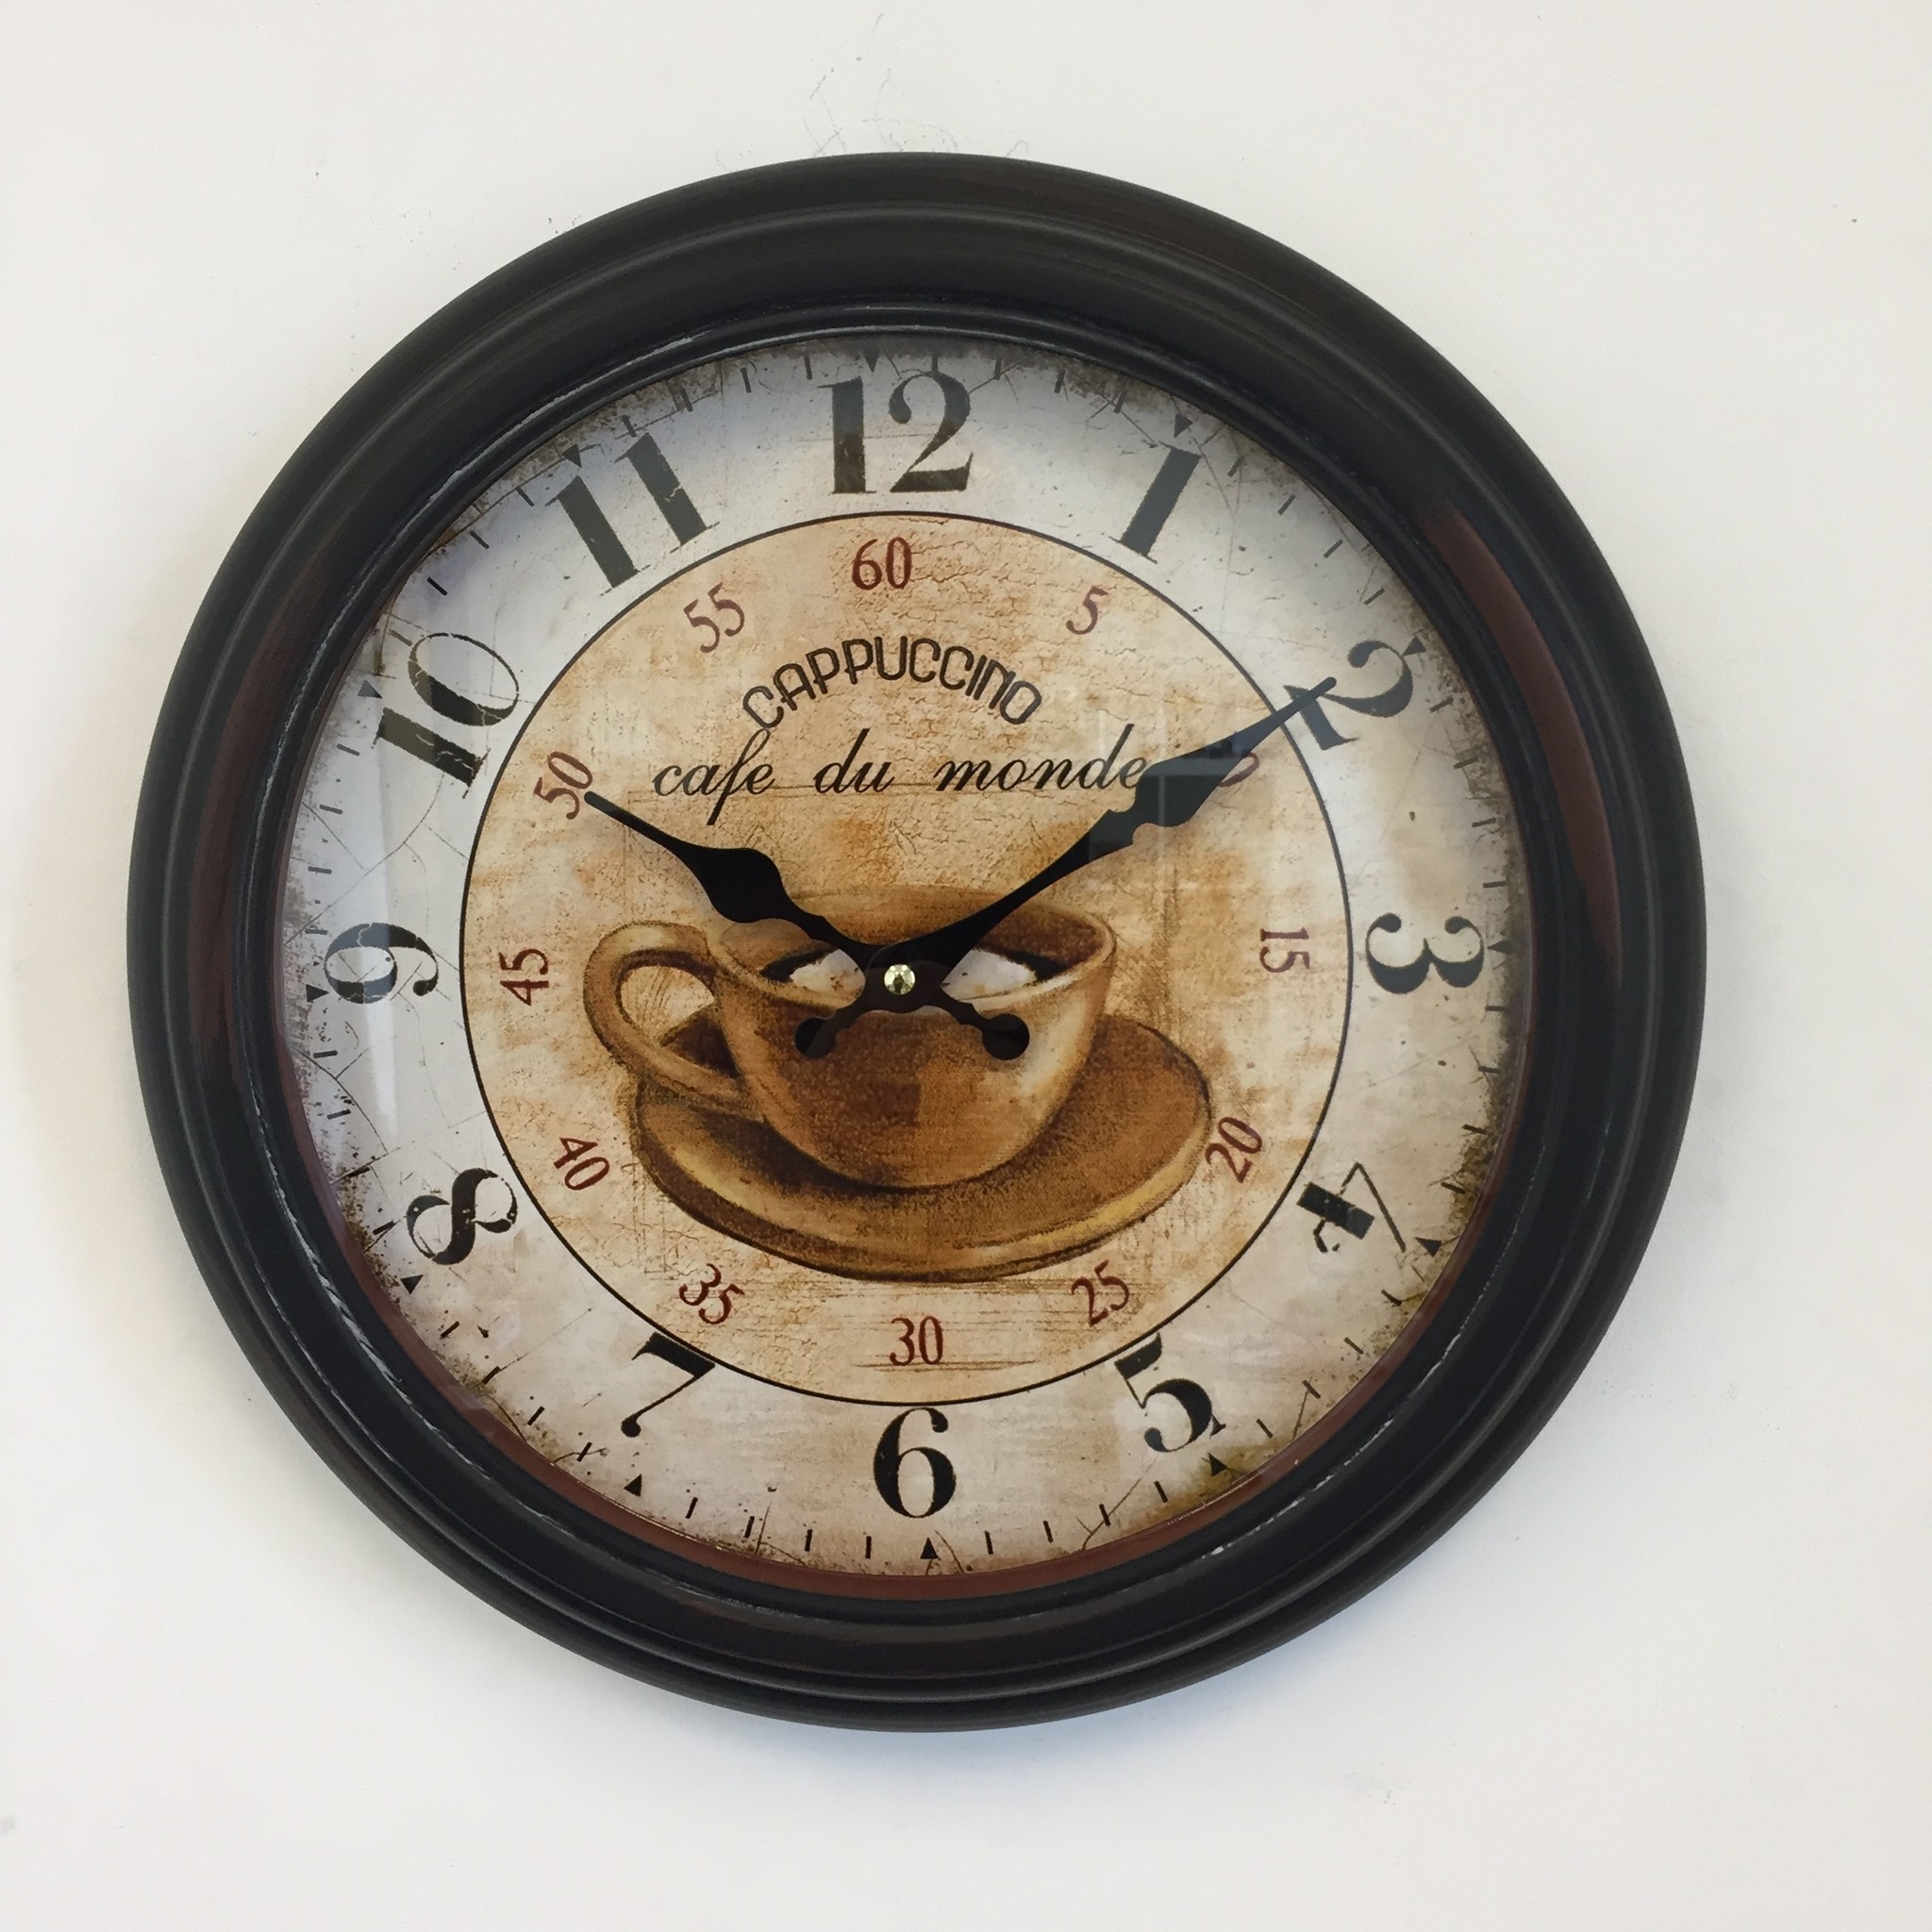 NiceTime Design - Wall clock Cappuccino Vintage Retro Industrial